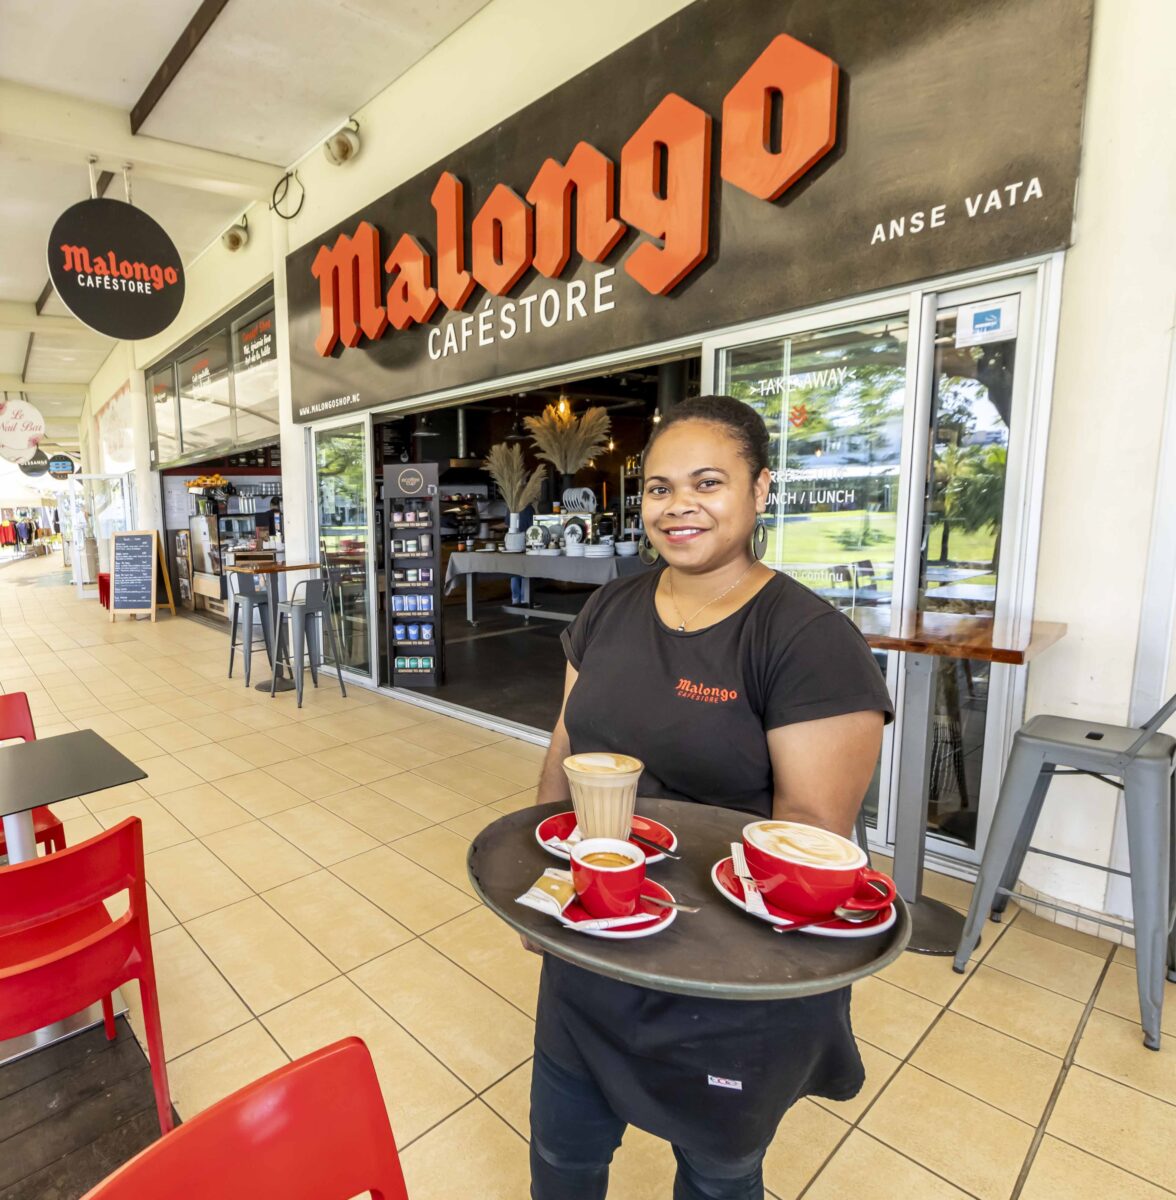 Malongo NC - Nouvelle-Calédonie - Café store anse vata